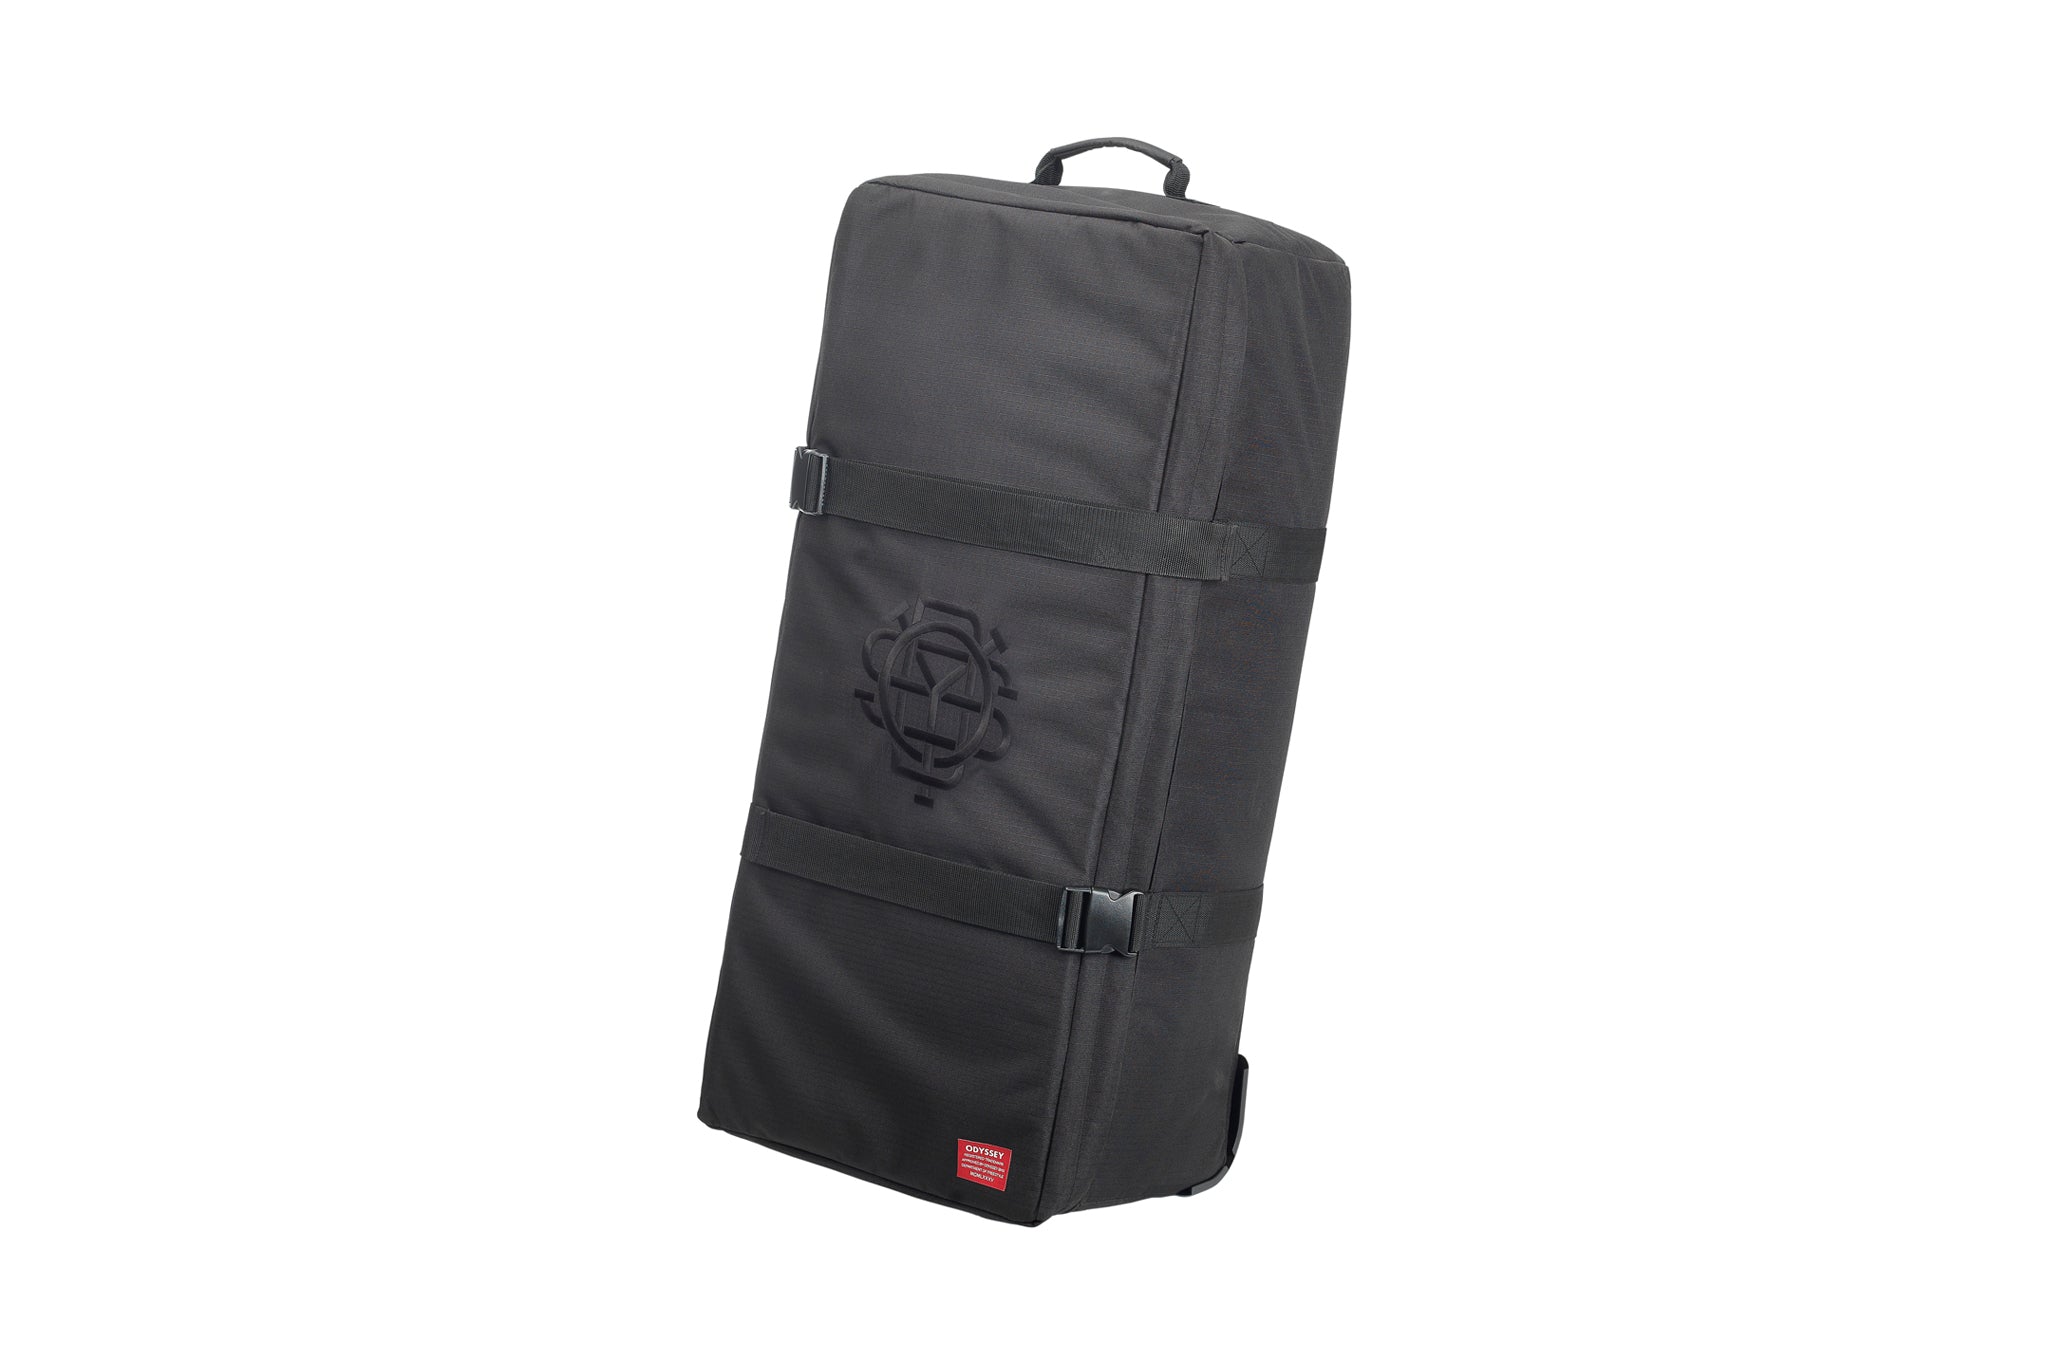 Buy 2PK Moki Odyssey Backpack Travel Bag Carry Case Cover for 15.6